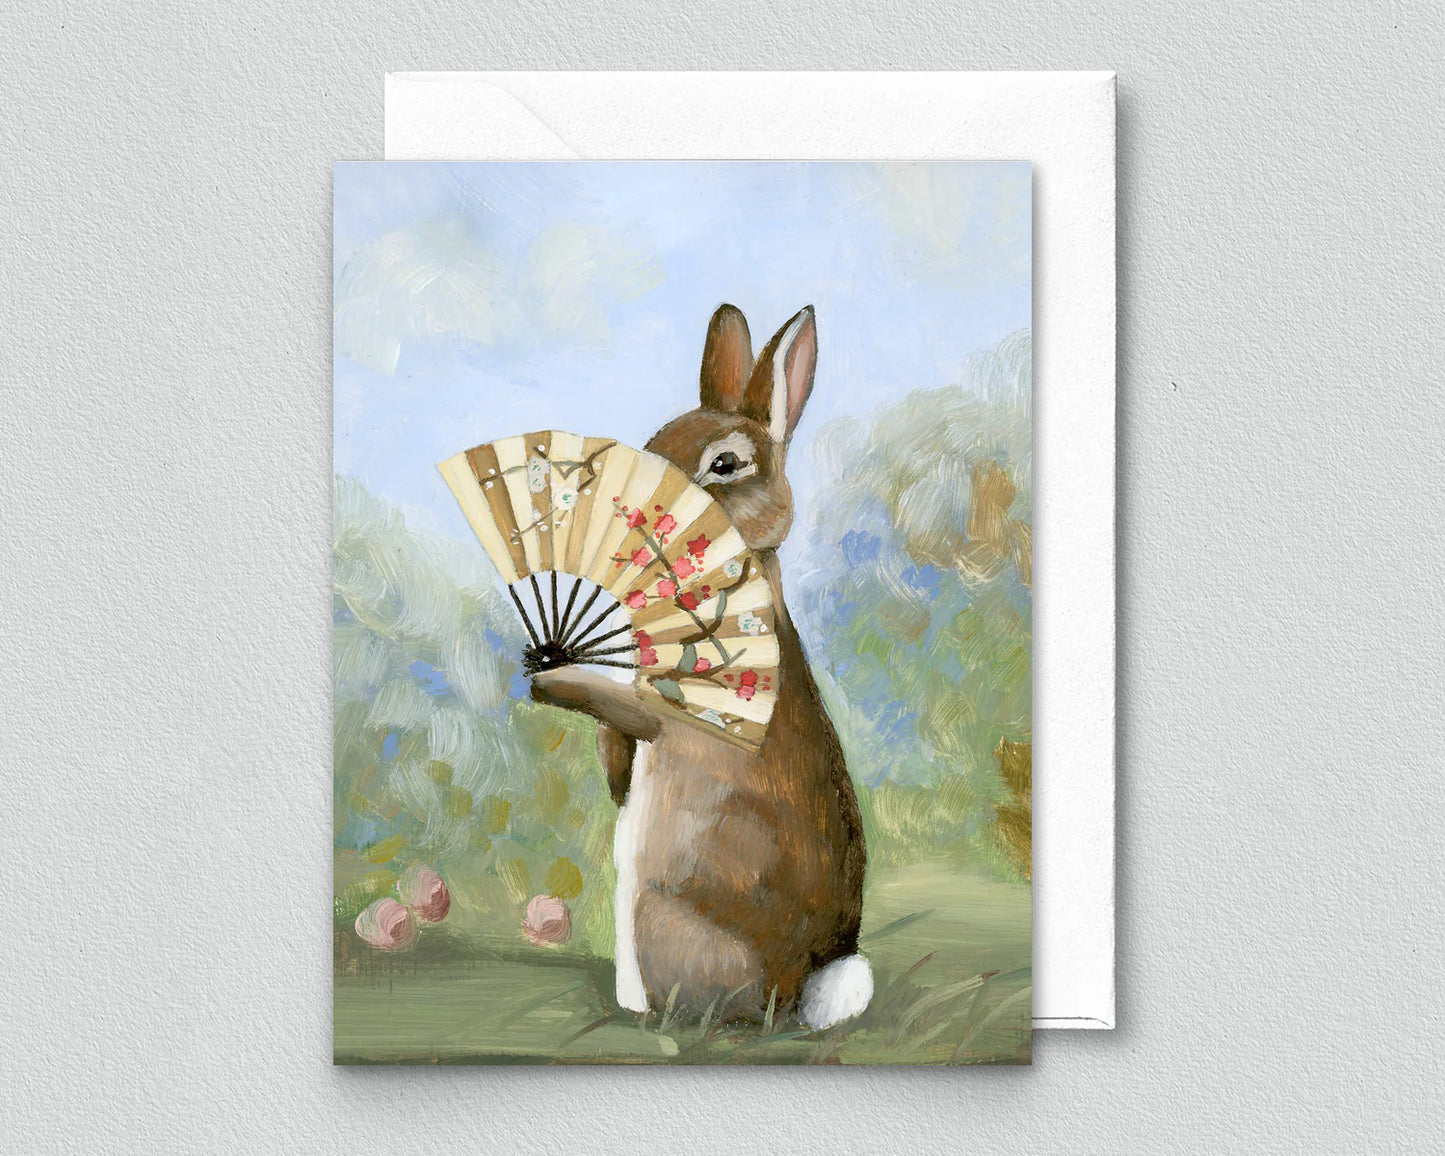 Rabbit Feeling Shy Greeting Card (blank inside) by Kim Ferreira (Joie de Vivre)